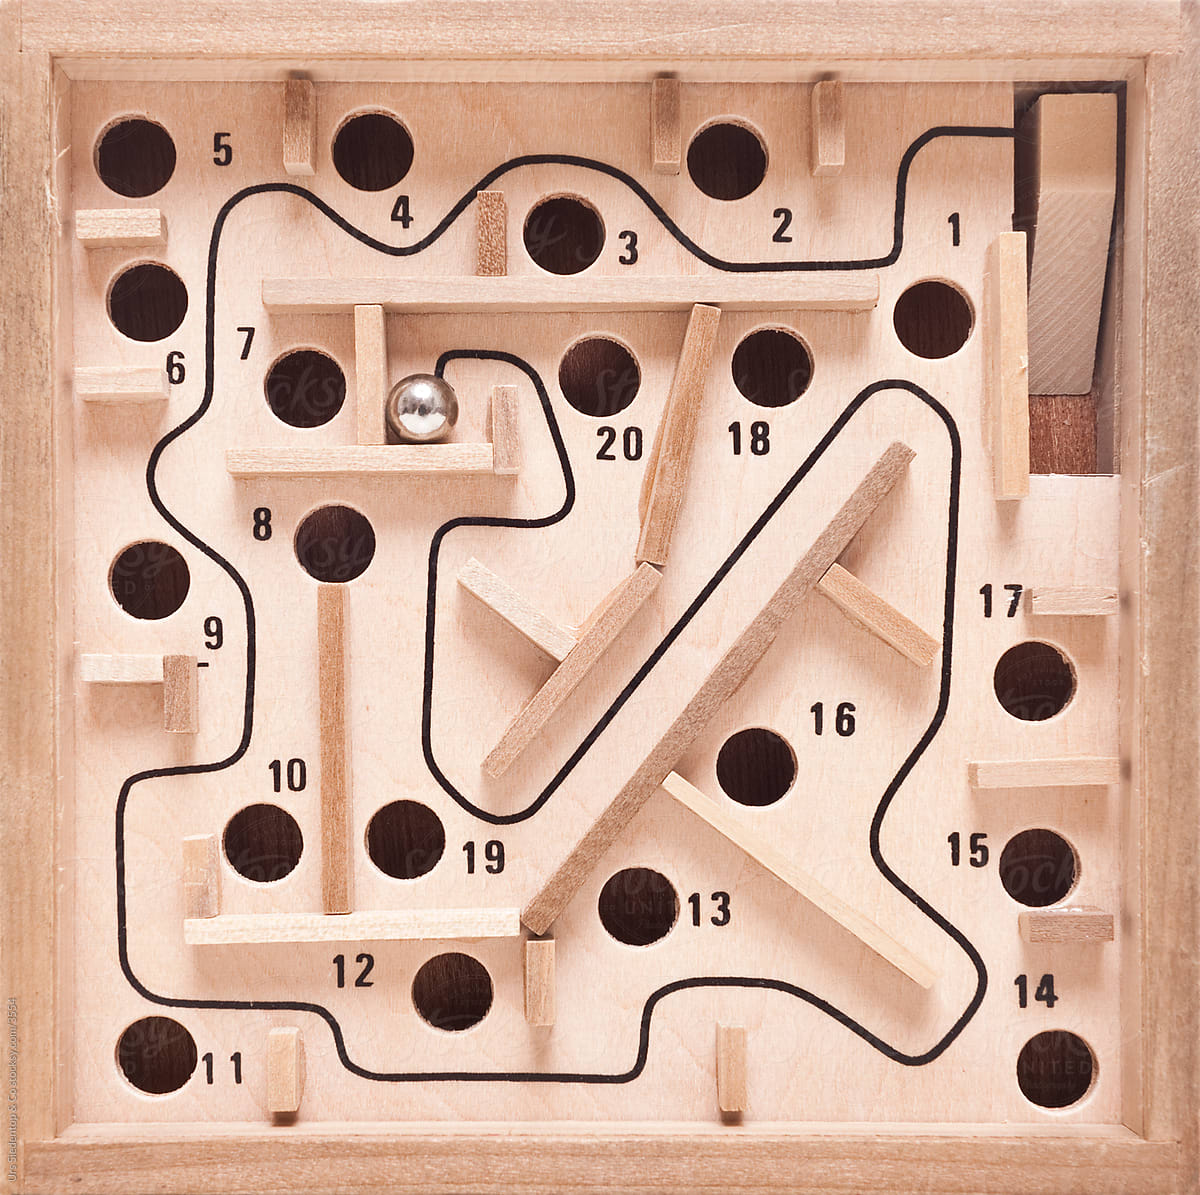 ball maze game